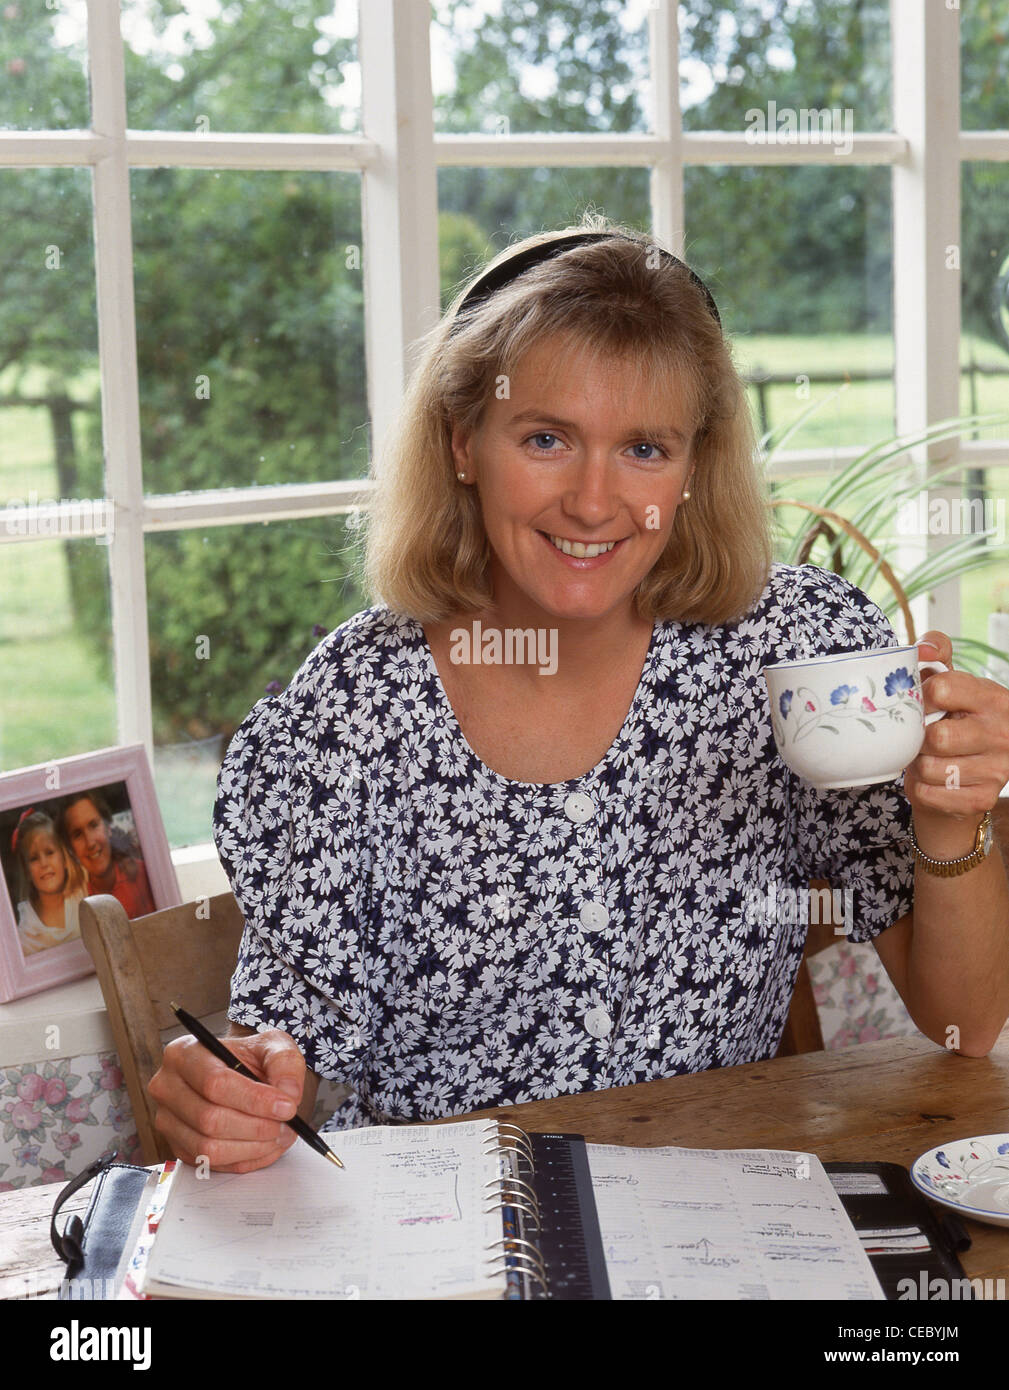 Junge Frau Tasse Tee trinken und Schreiben von Noten, Surrey, England, Vereinigtes Königreich Stockfoto